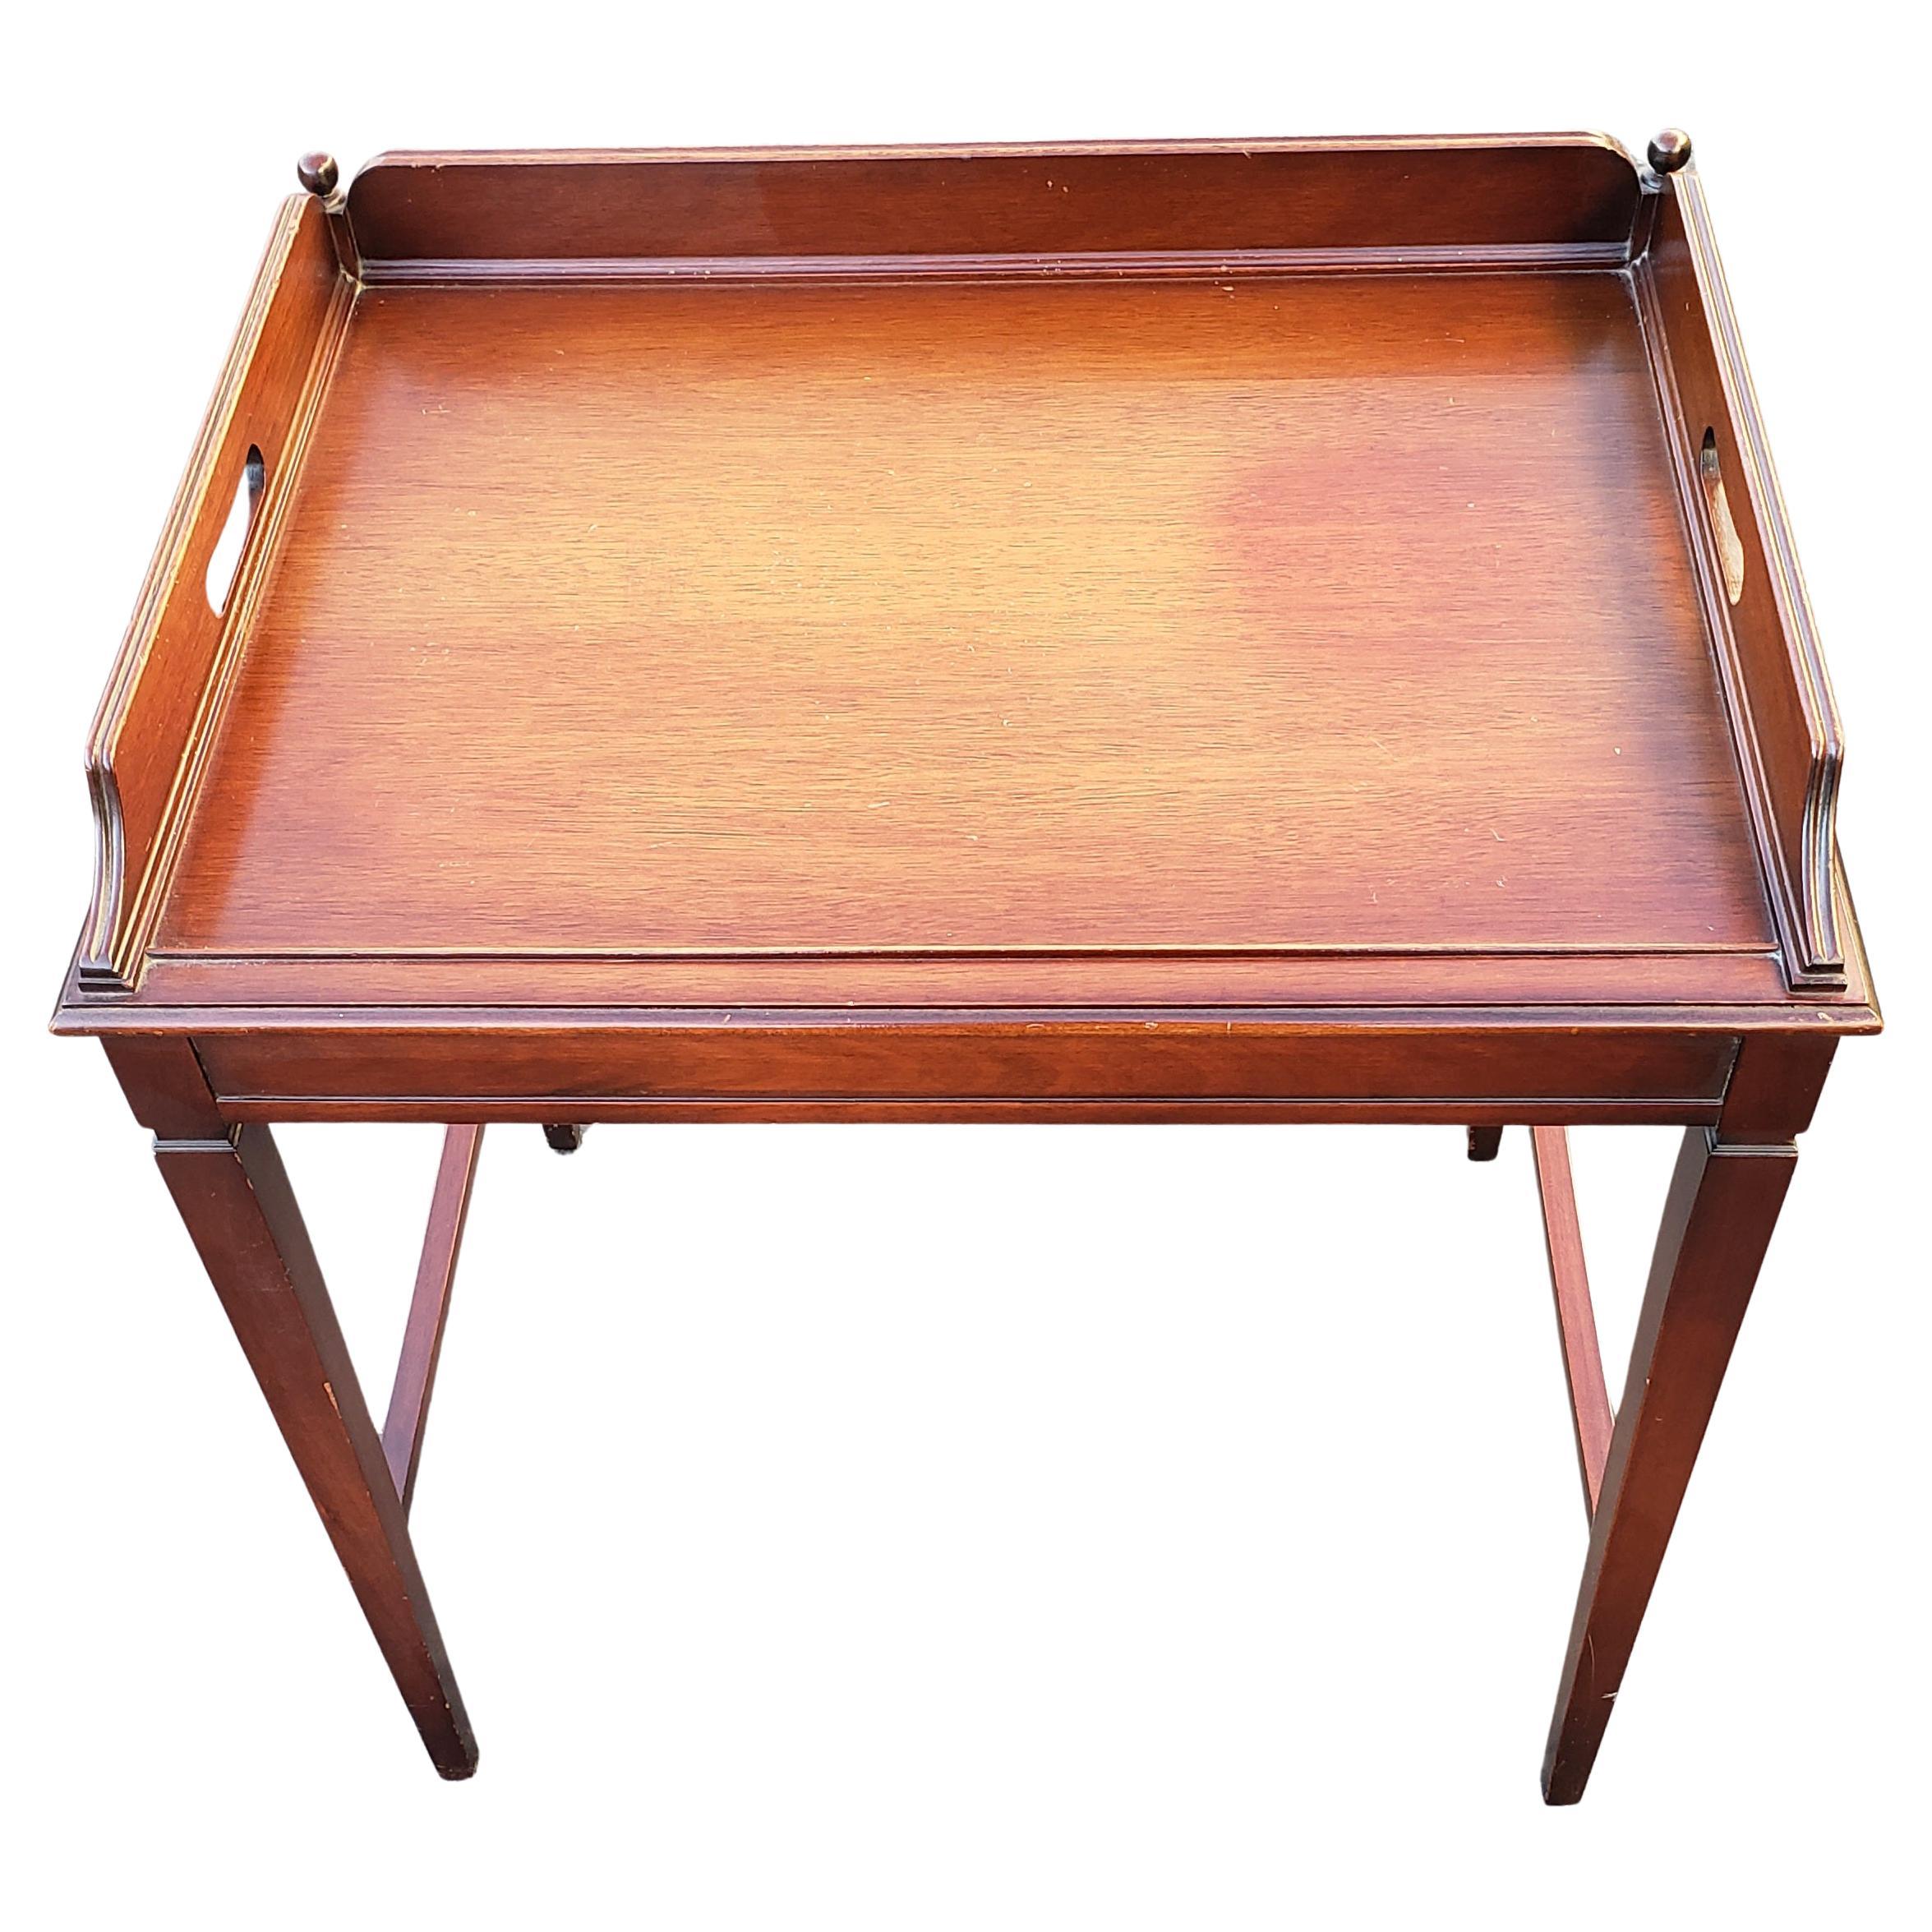 imperial mahogany table 123